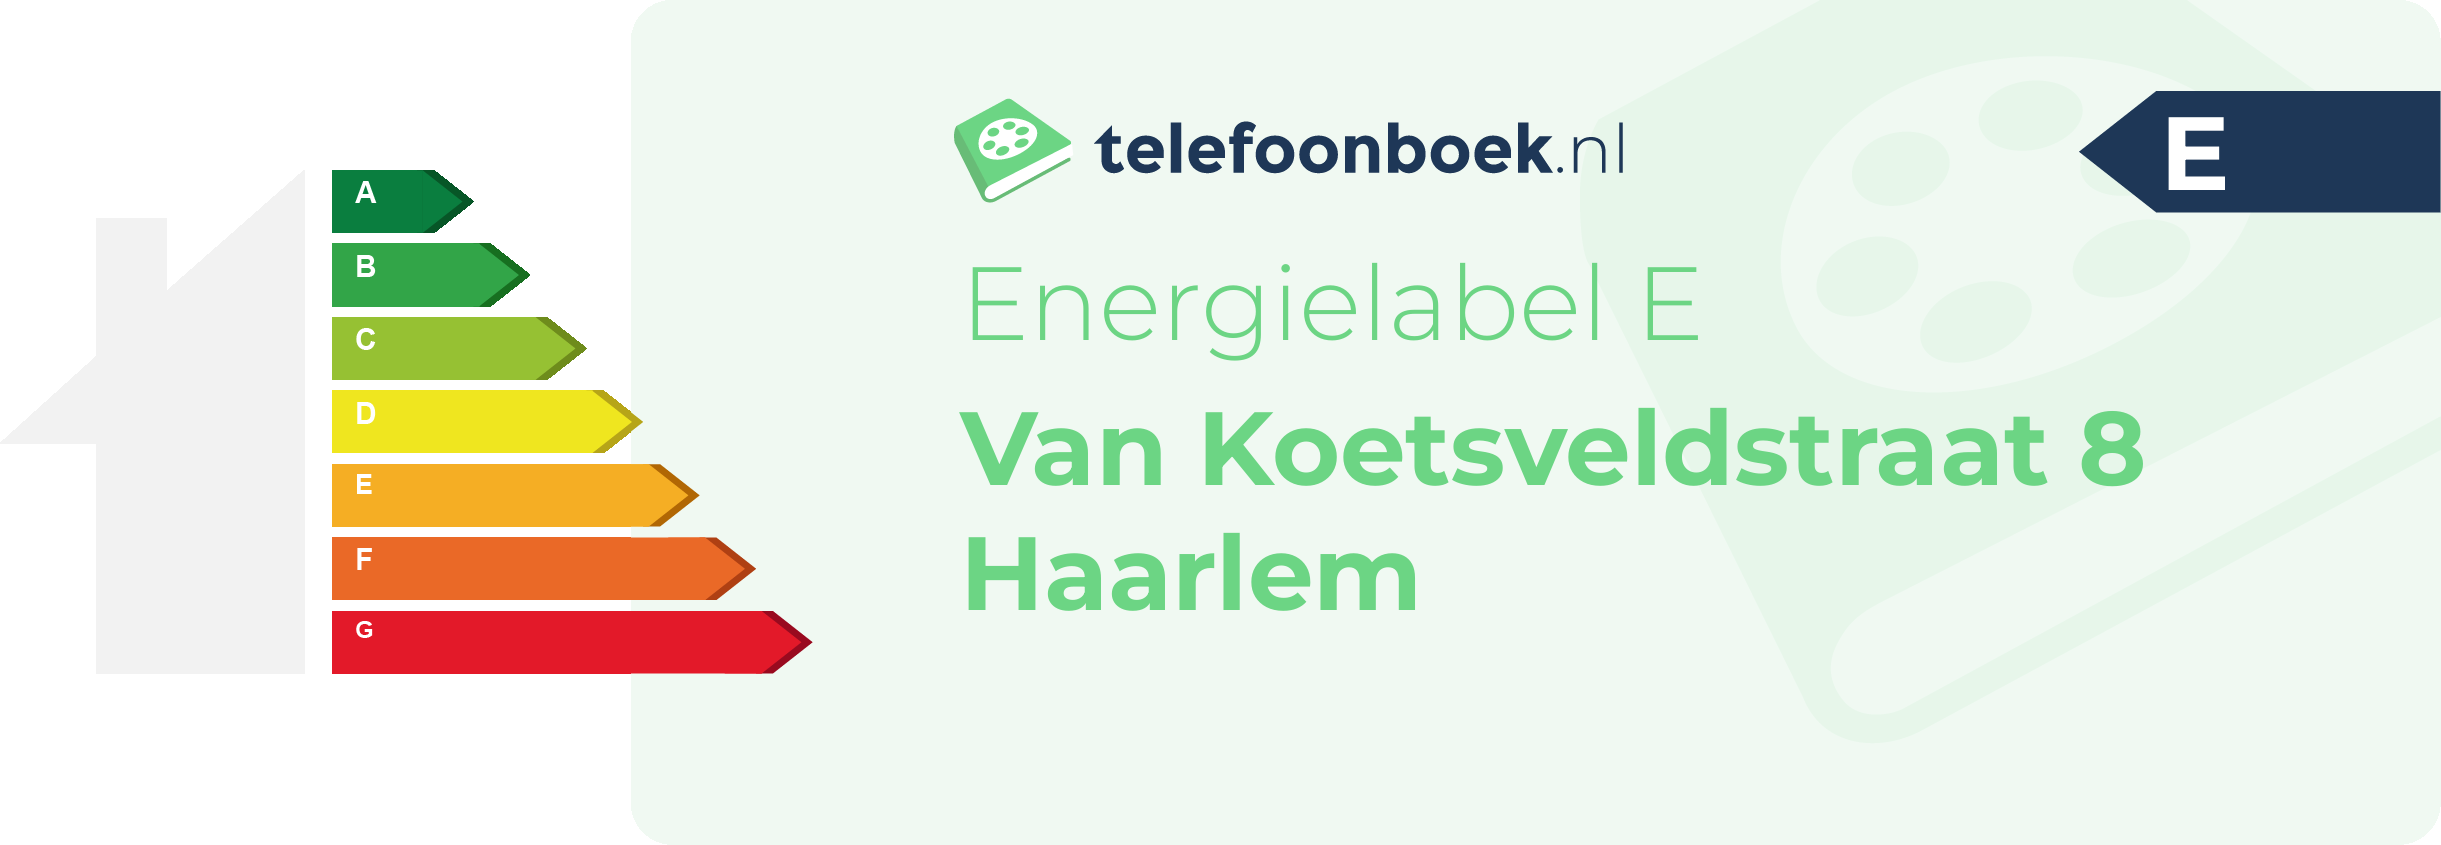 Energielabel Van Koetsveldstraat 8 Haarlem